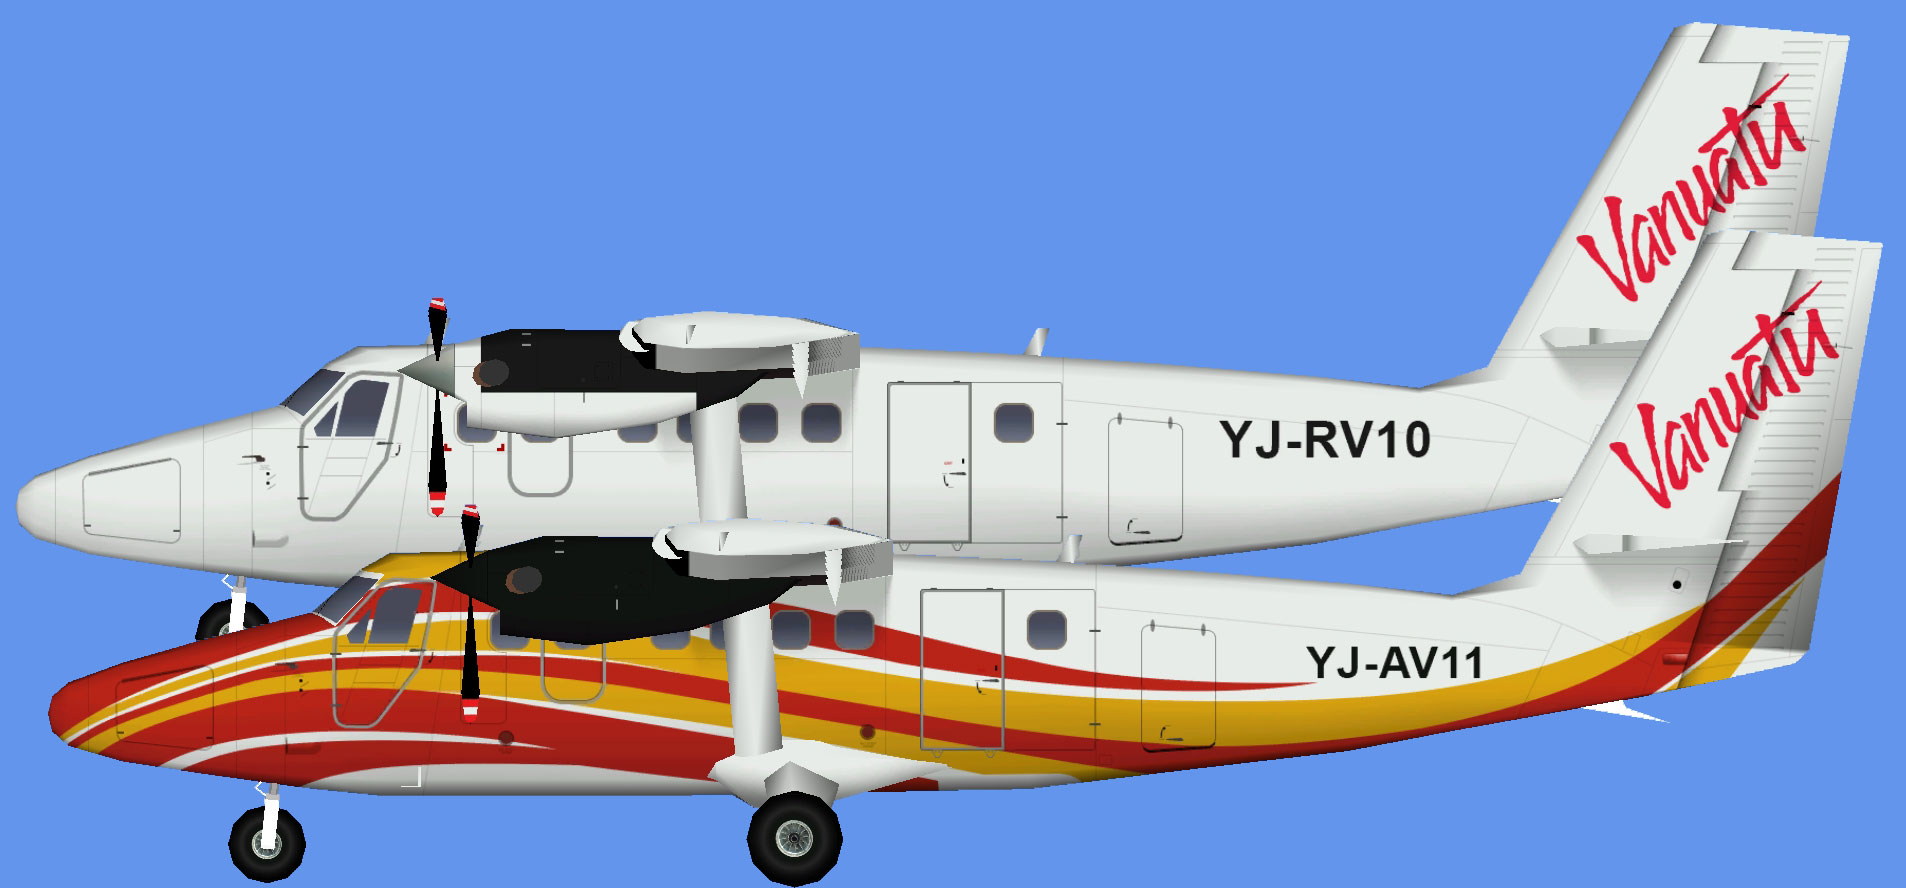 Air Vanuatu DHC-6 300